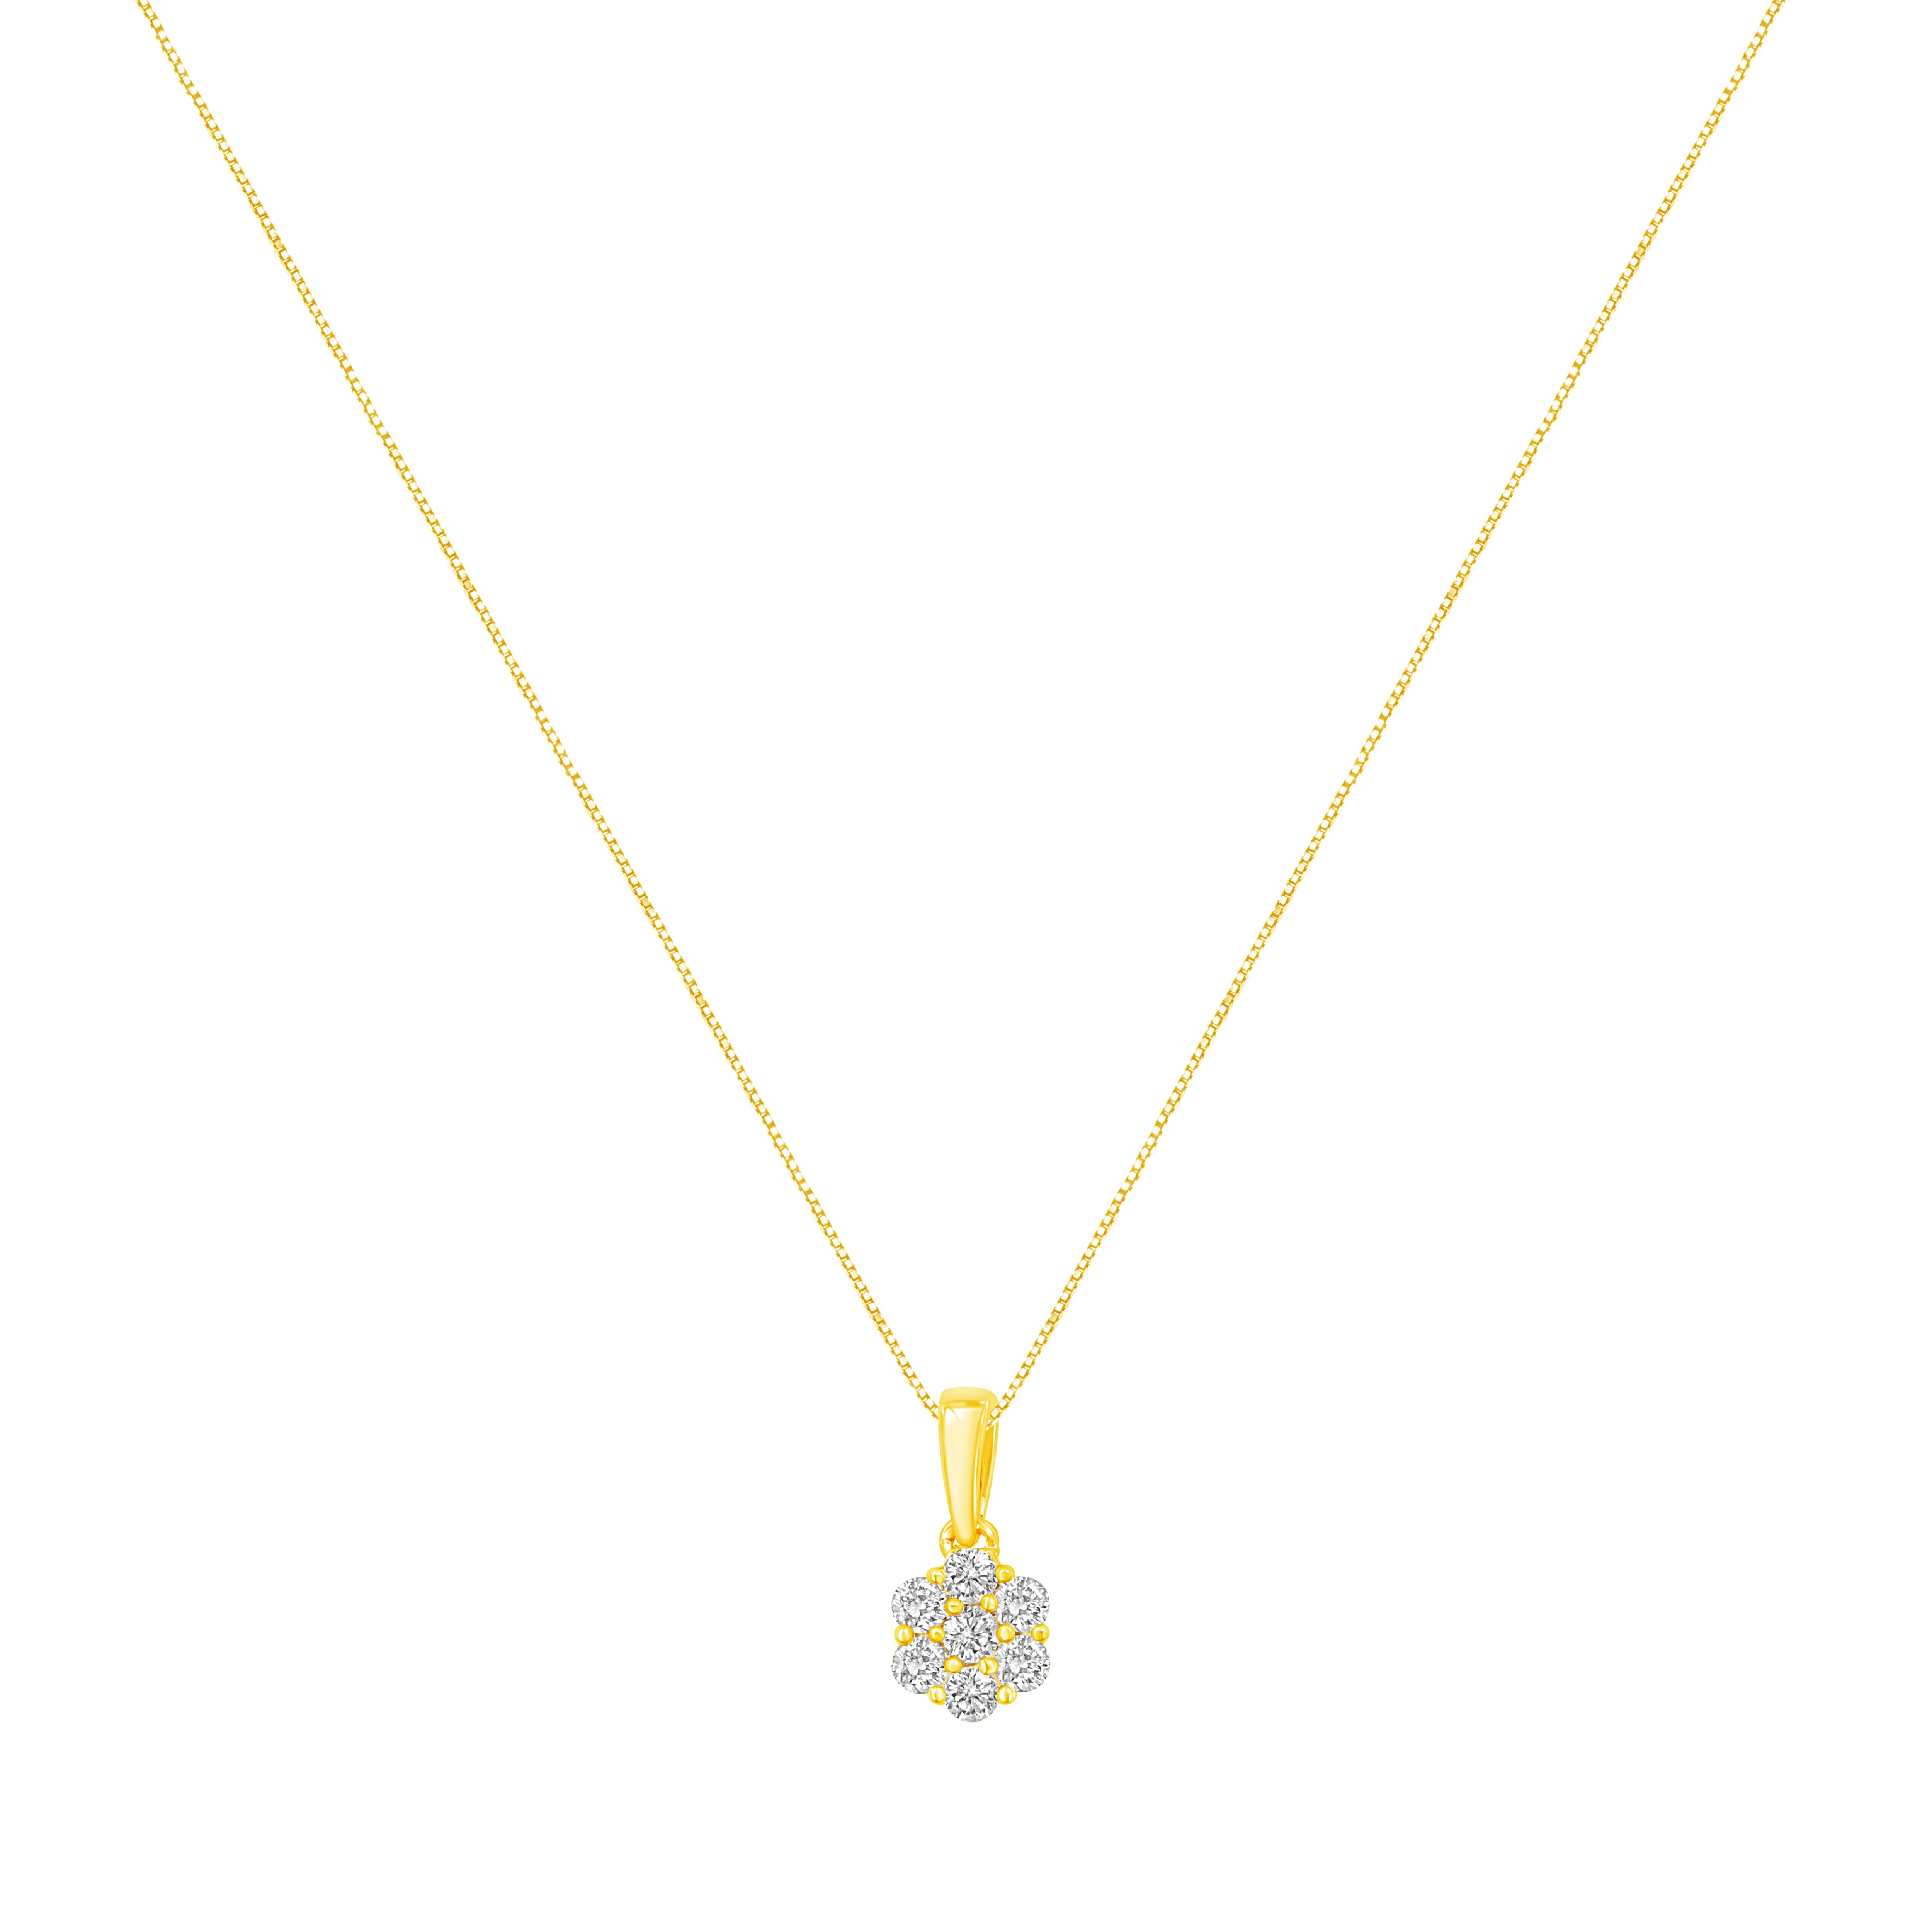 Dieser atemberaubende Blumenanhänger ist mit 7 natürlichen Diamanten im Rundschliff in einer glitzernden Zackenfassung ausgestattet. Diese Halskette aus warmem 14-karätigem Gelbgold ist mit 1/2 ct tdw. Dies ist das perfekte Accessoire für jede